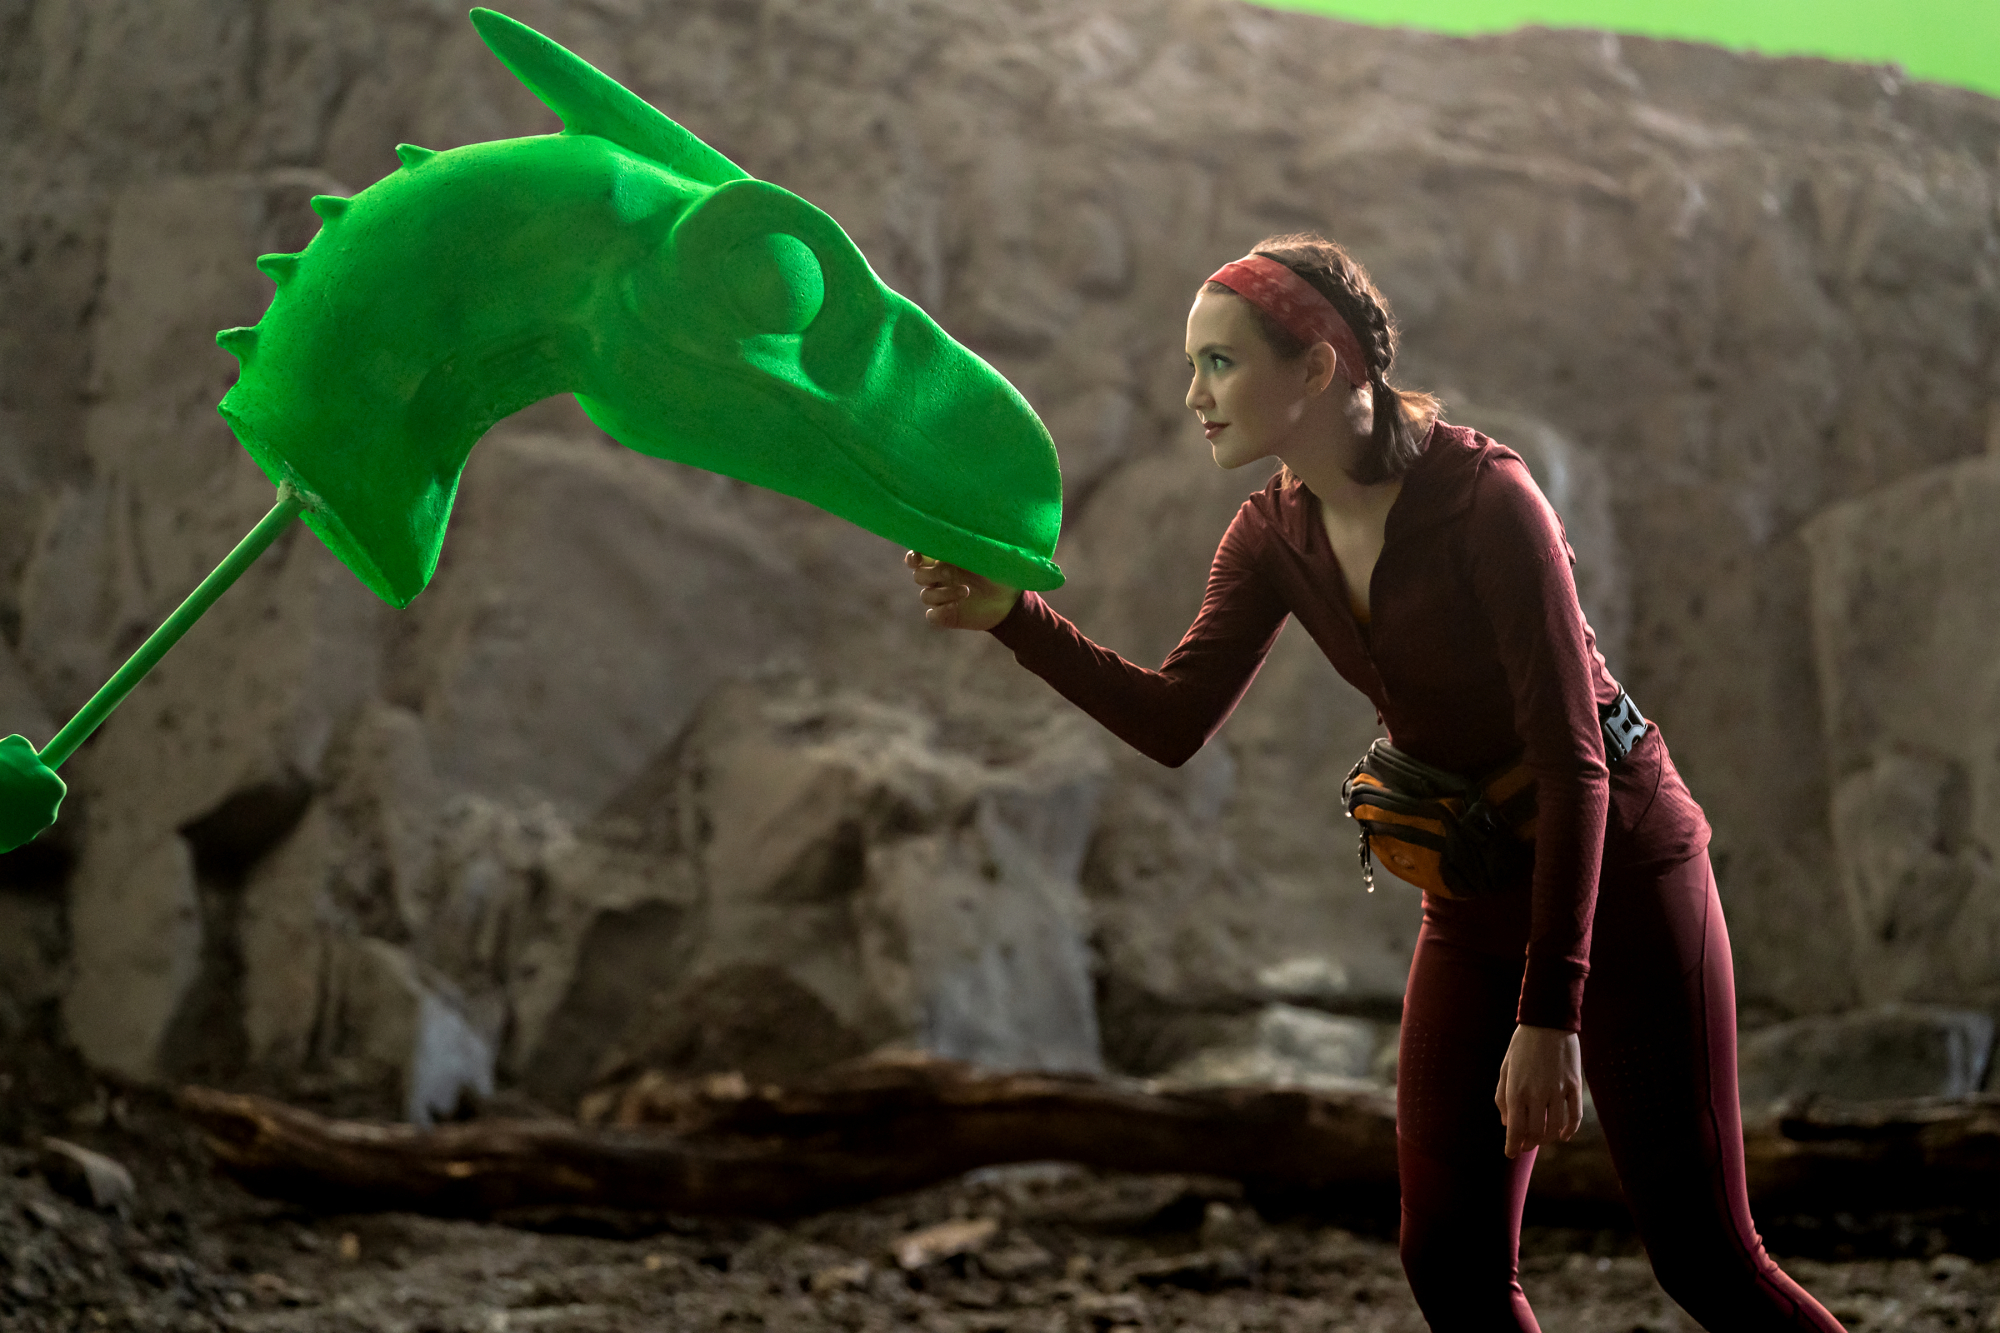 Une jeune femme atteint sous le menton d'une tête de dinosaure à écran vert.